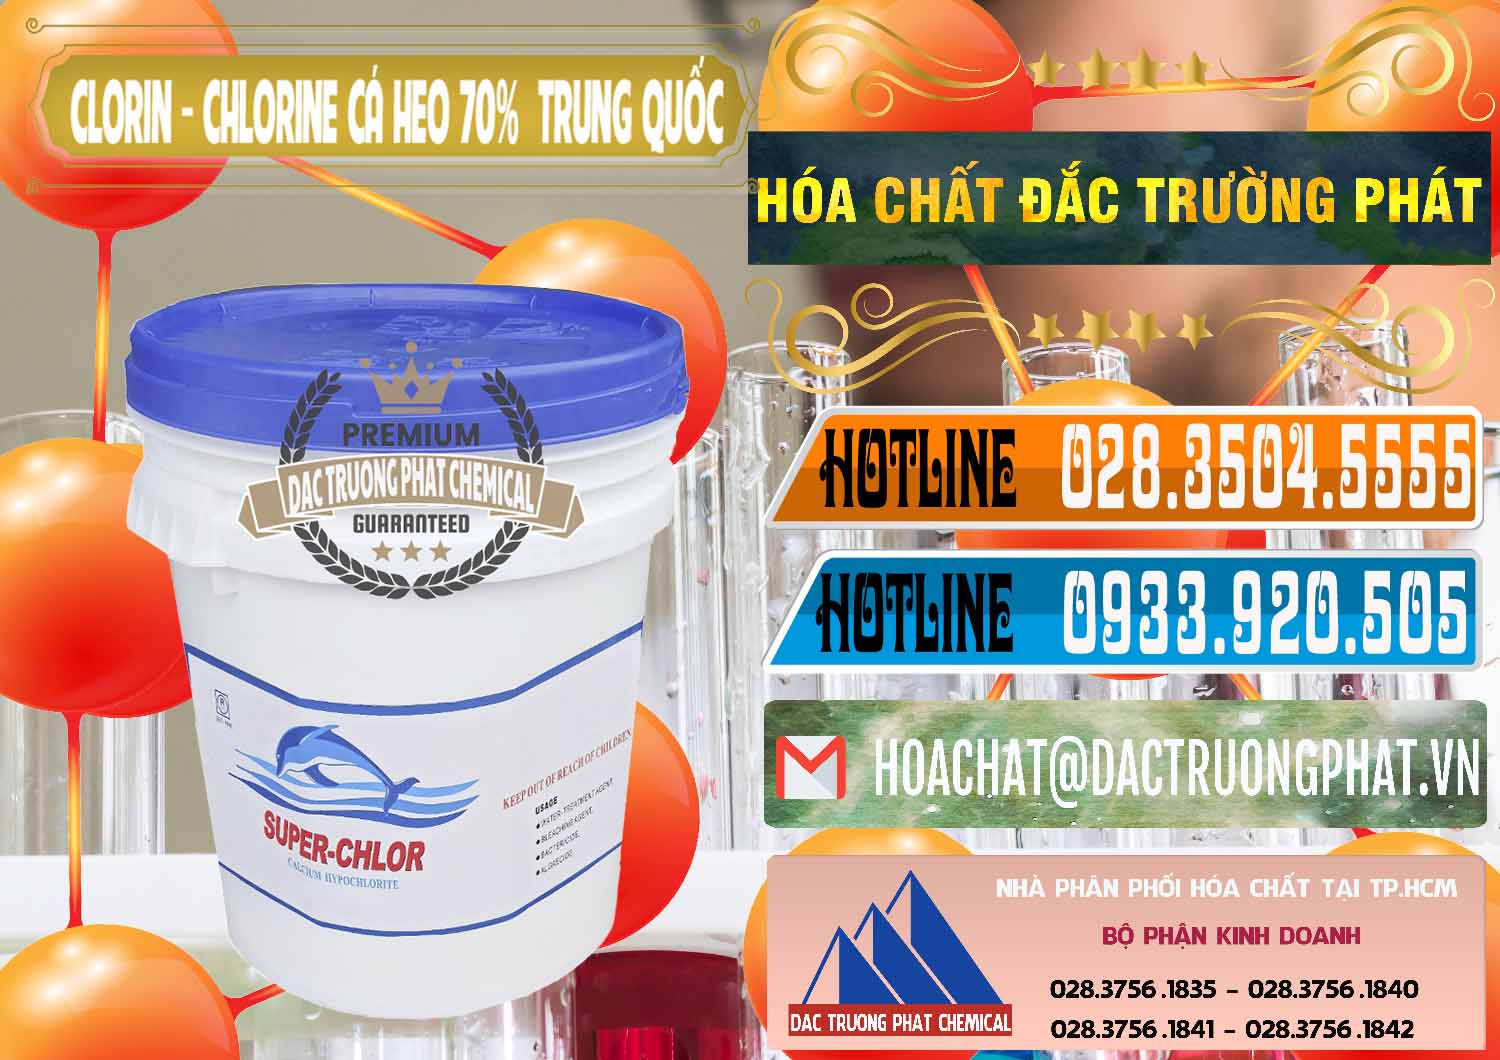 Nơi phân phối _ bán Clorin - Chlorine Cá Heo 70% Super Chlor Nắp Xanh Trung Quốc China - 0209 - Đơn vị kinh doanh ( cung cấp ) hóa chất tại TP.HCM - stmp.net